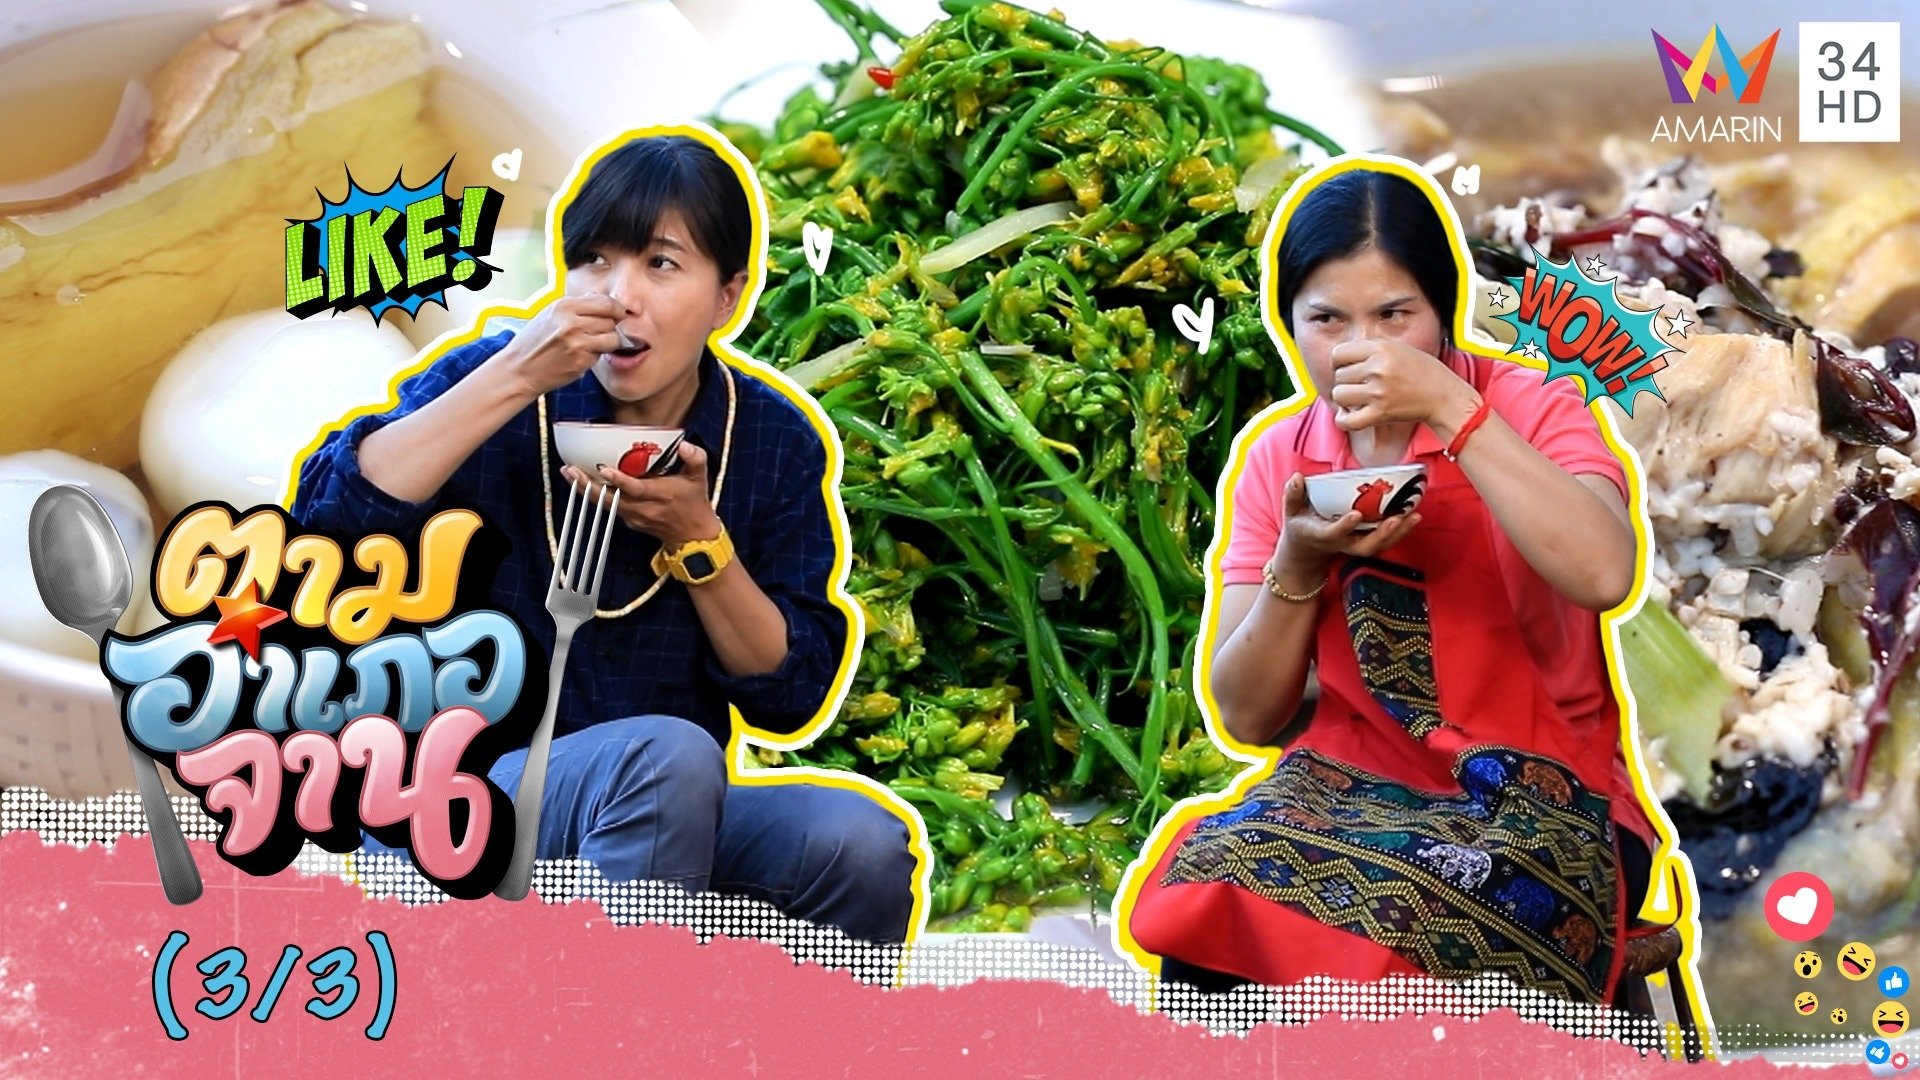 เมนูจาก 'ขิง' กินดีเพื่อสุขภาพ 'ข้าวหวาน-ผัดดอกผักกาด' | ตามอำเภอจาน | 26 ก.พ. 65 (3/3) | AMARIN TVHD34